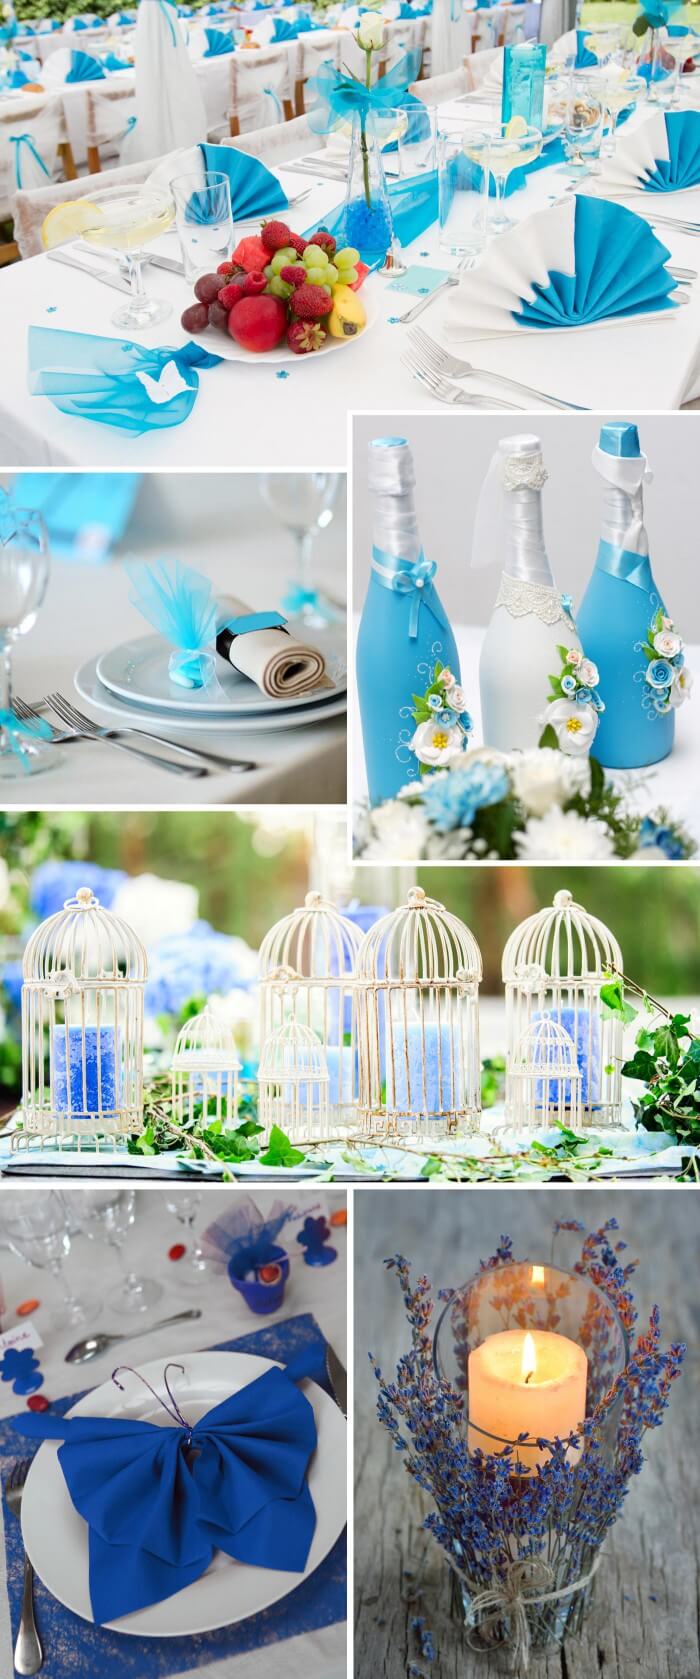 Hochzeit in Türkis und Blau